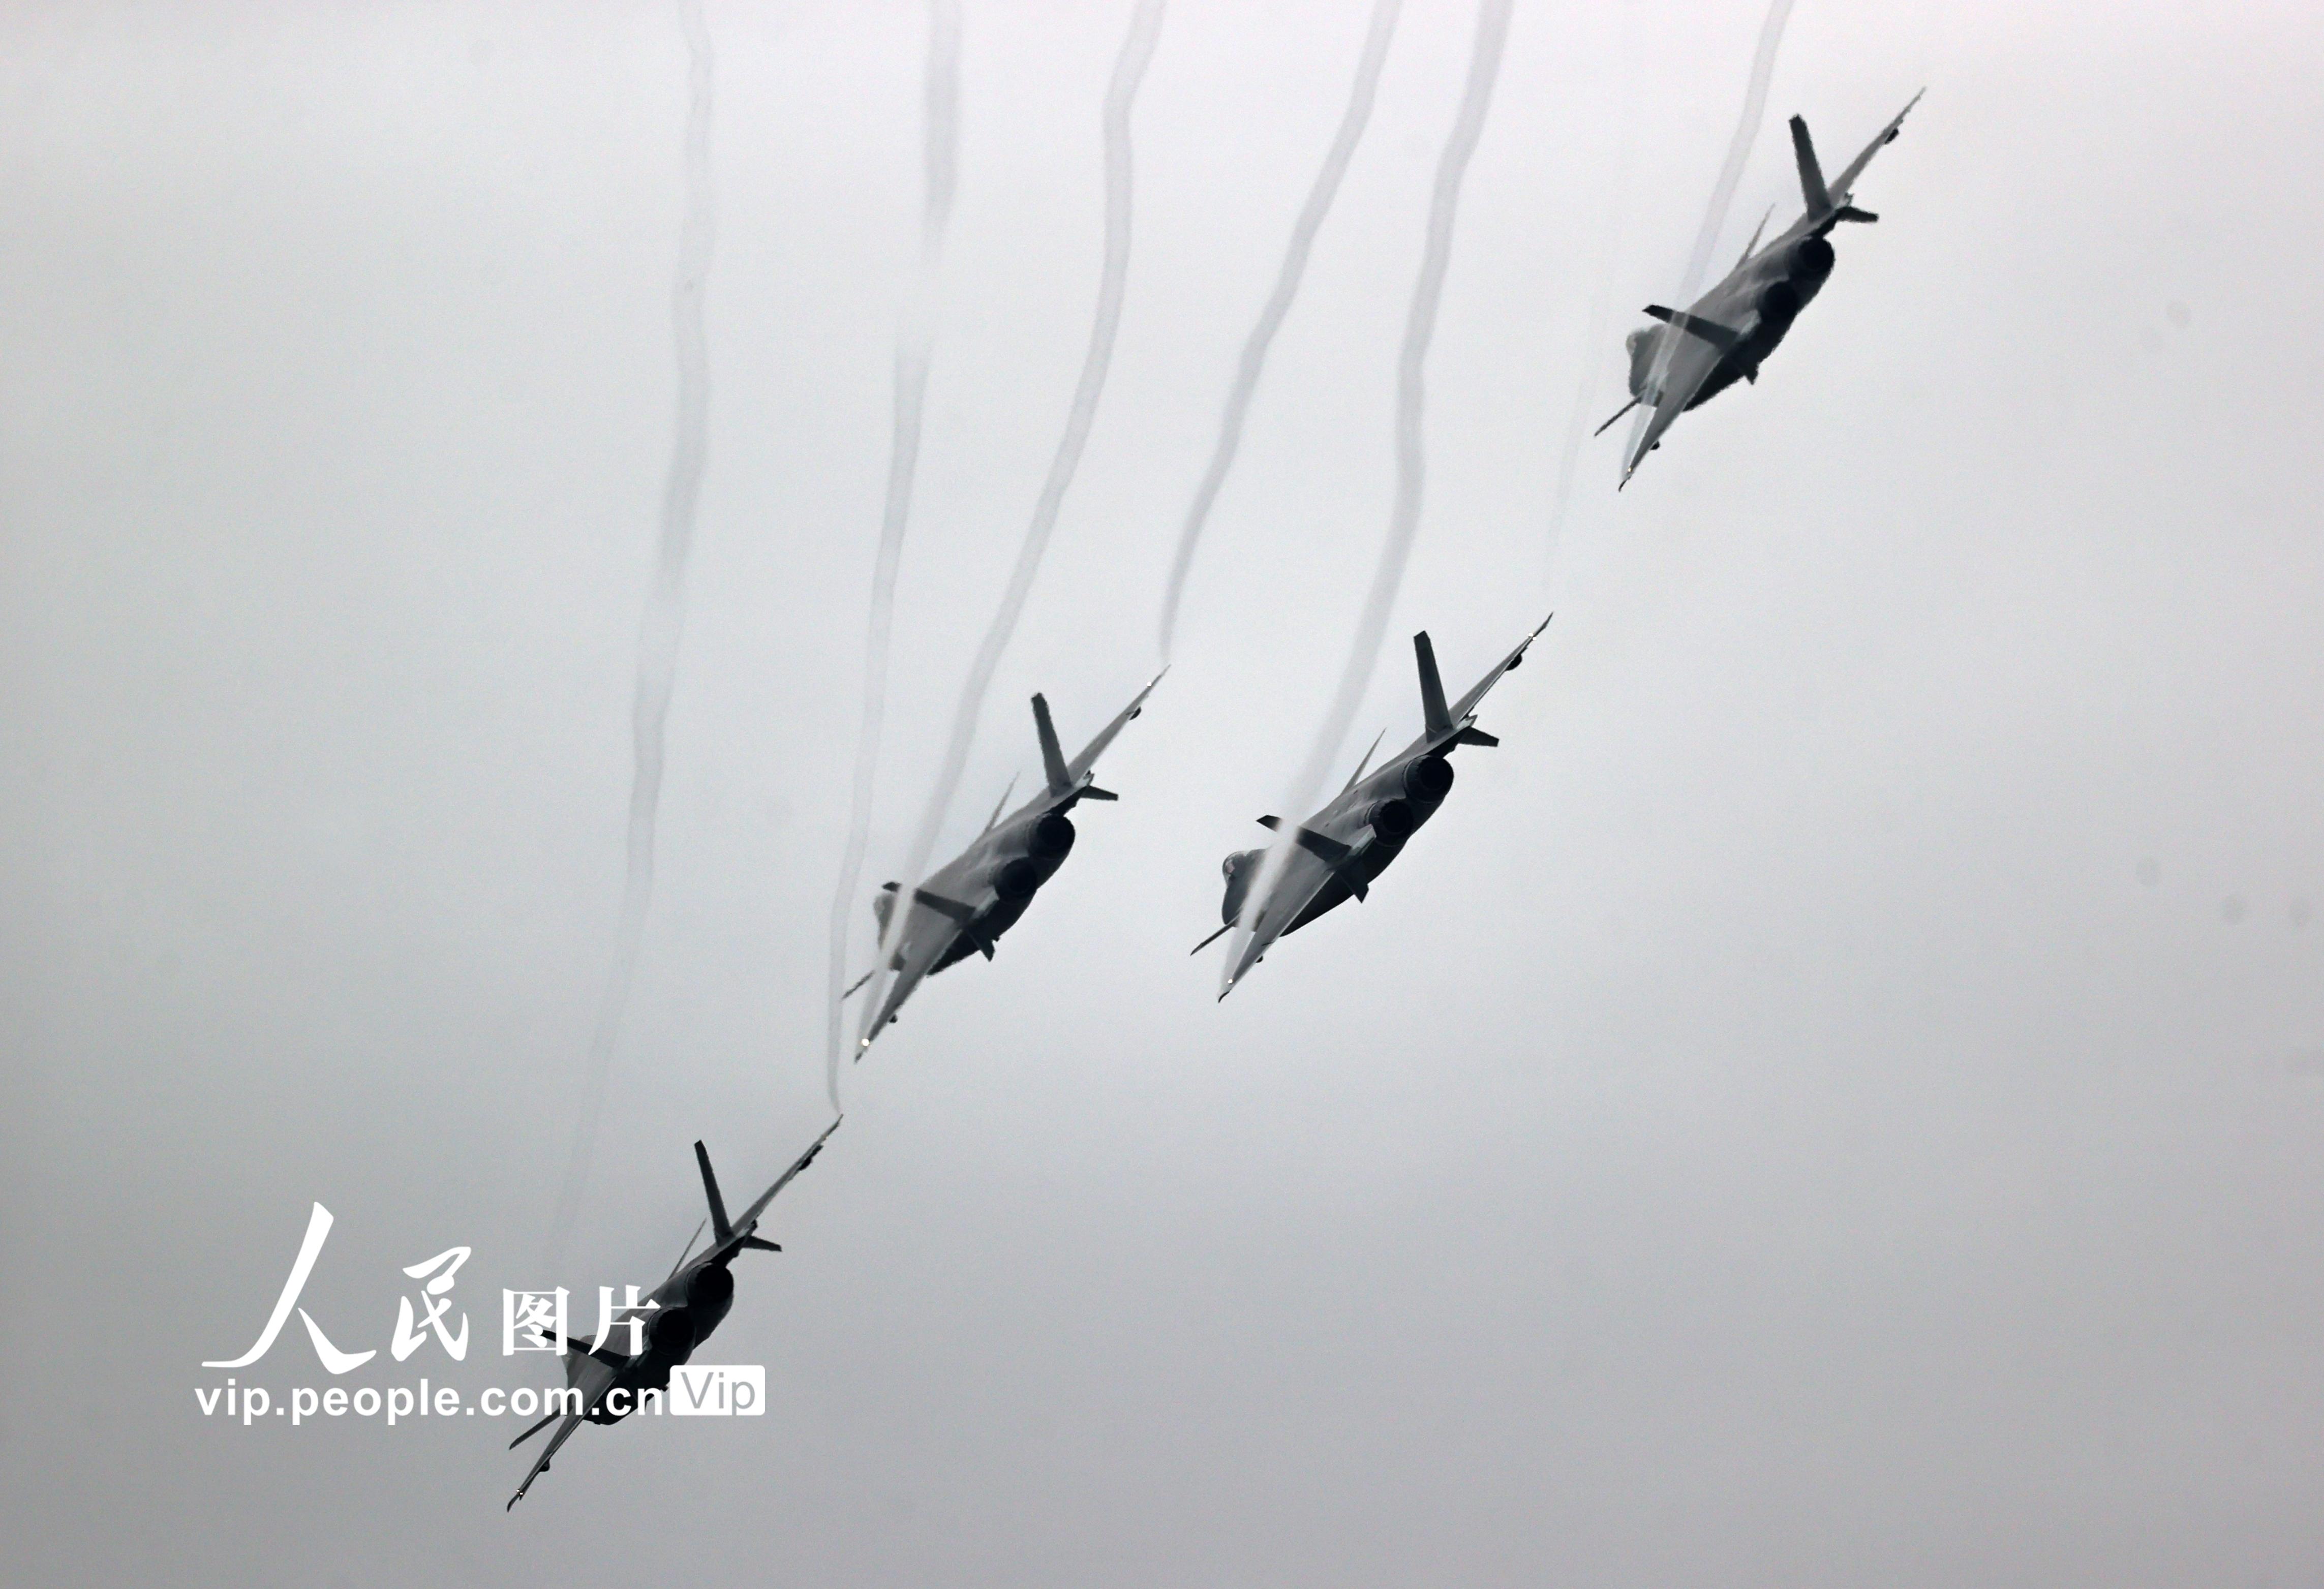 2022年11月8日，第十四届中国航展，4架歼-20飞机组成编队展示了它强大的机动性和飞机性能。